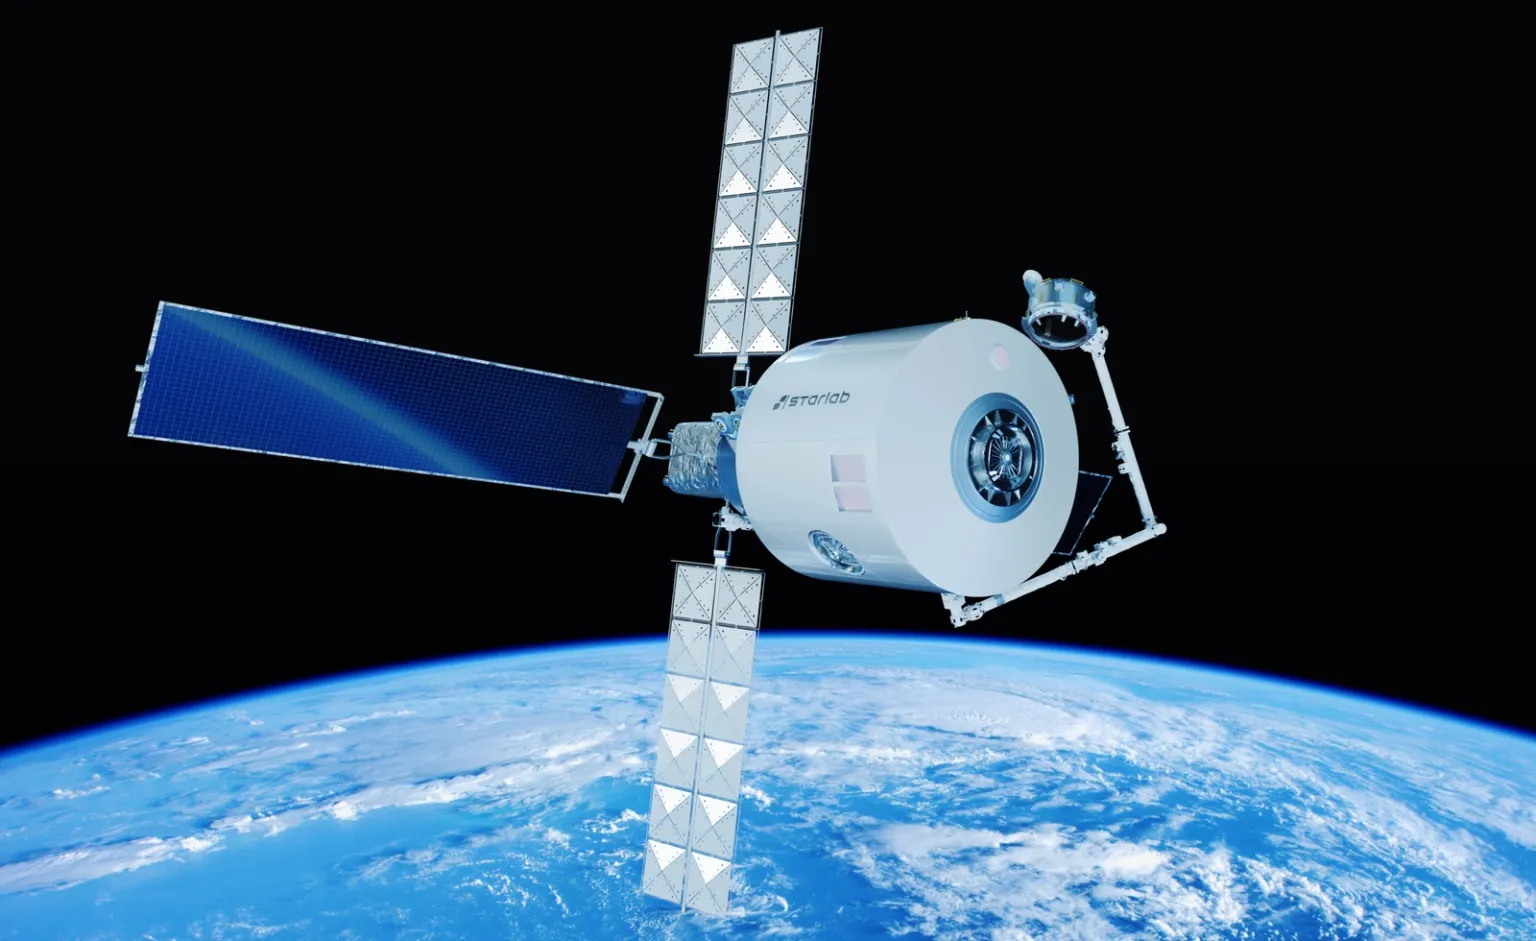 Voyager Space і Airbus Defence and Space створили спільне підприємство, яке буде займатися розробкою і експлуатацією комерційної космічної станції Starlab. Фото: Voyager Space